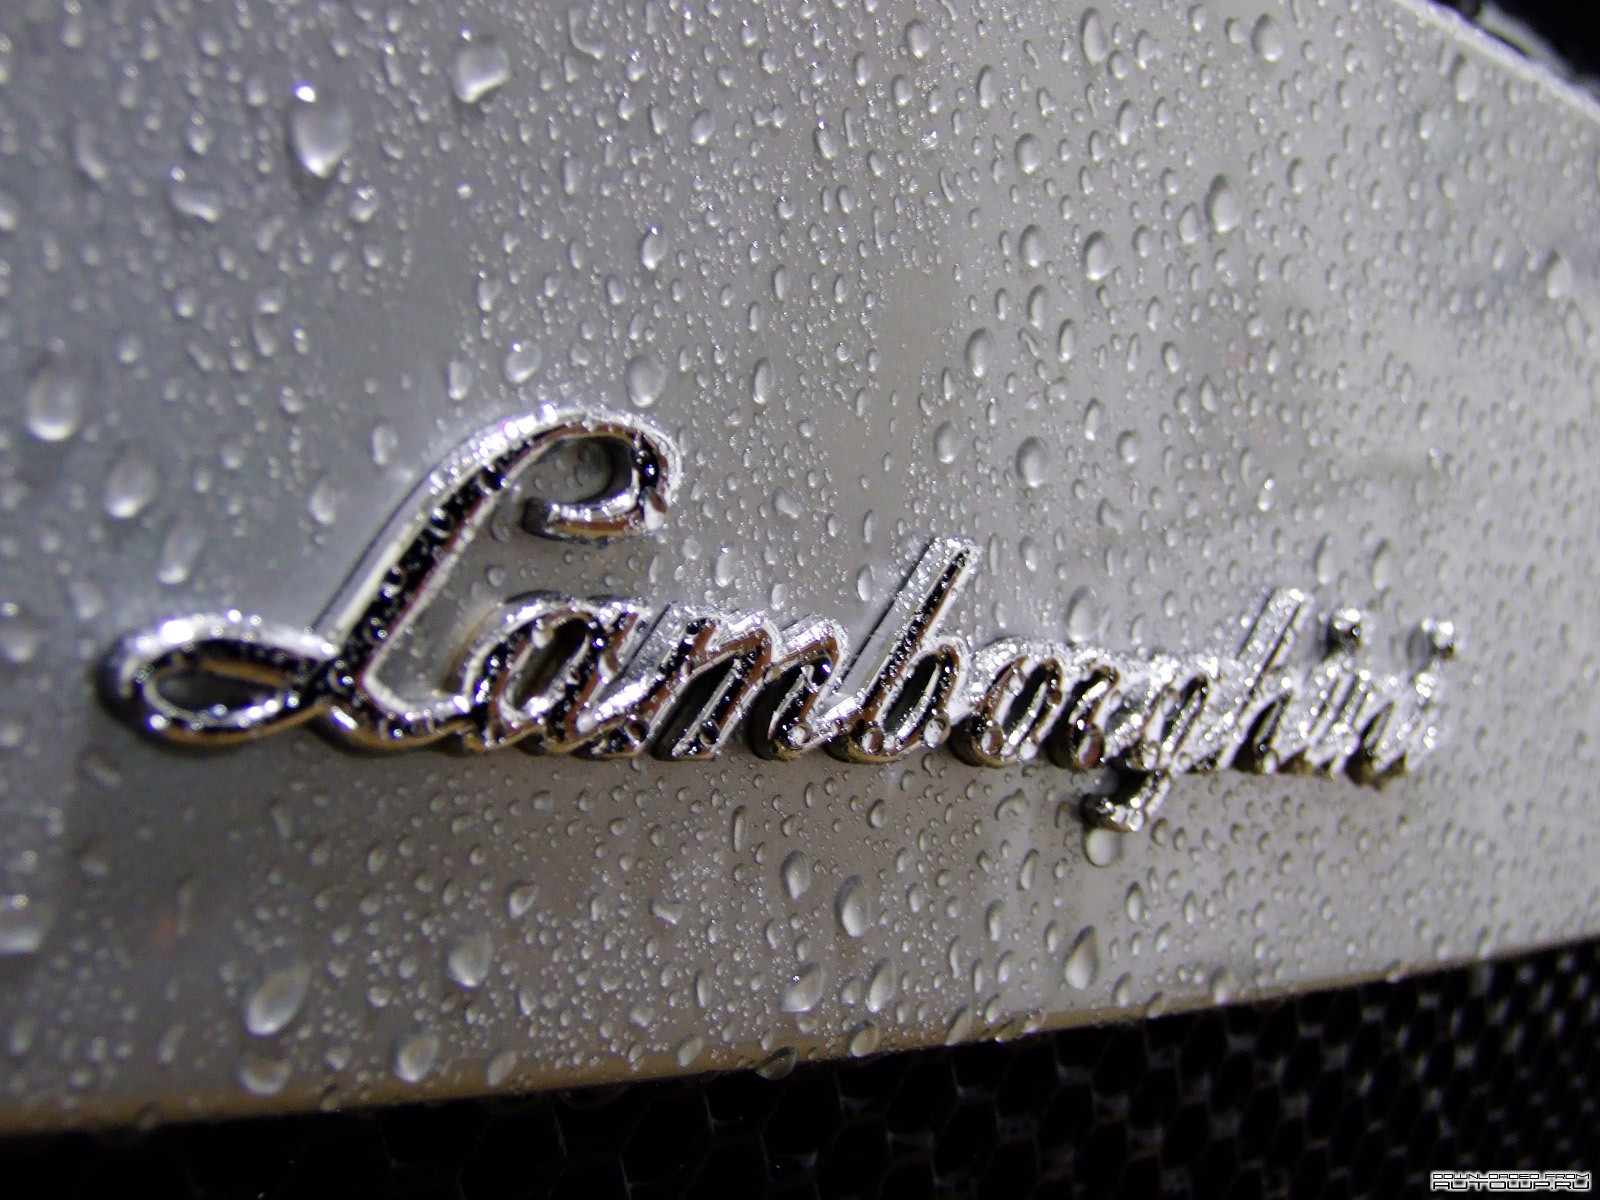 General 1600x1200 car Lamborghini water drops logo wet closeup vehicle italian cars Volkswagen Group